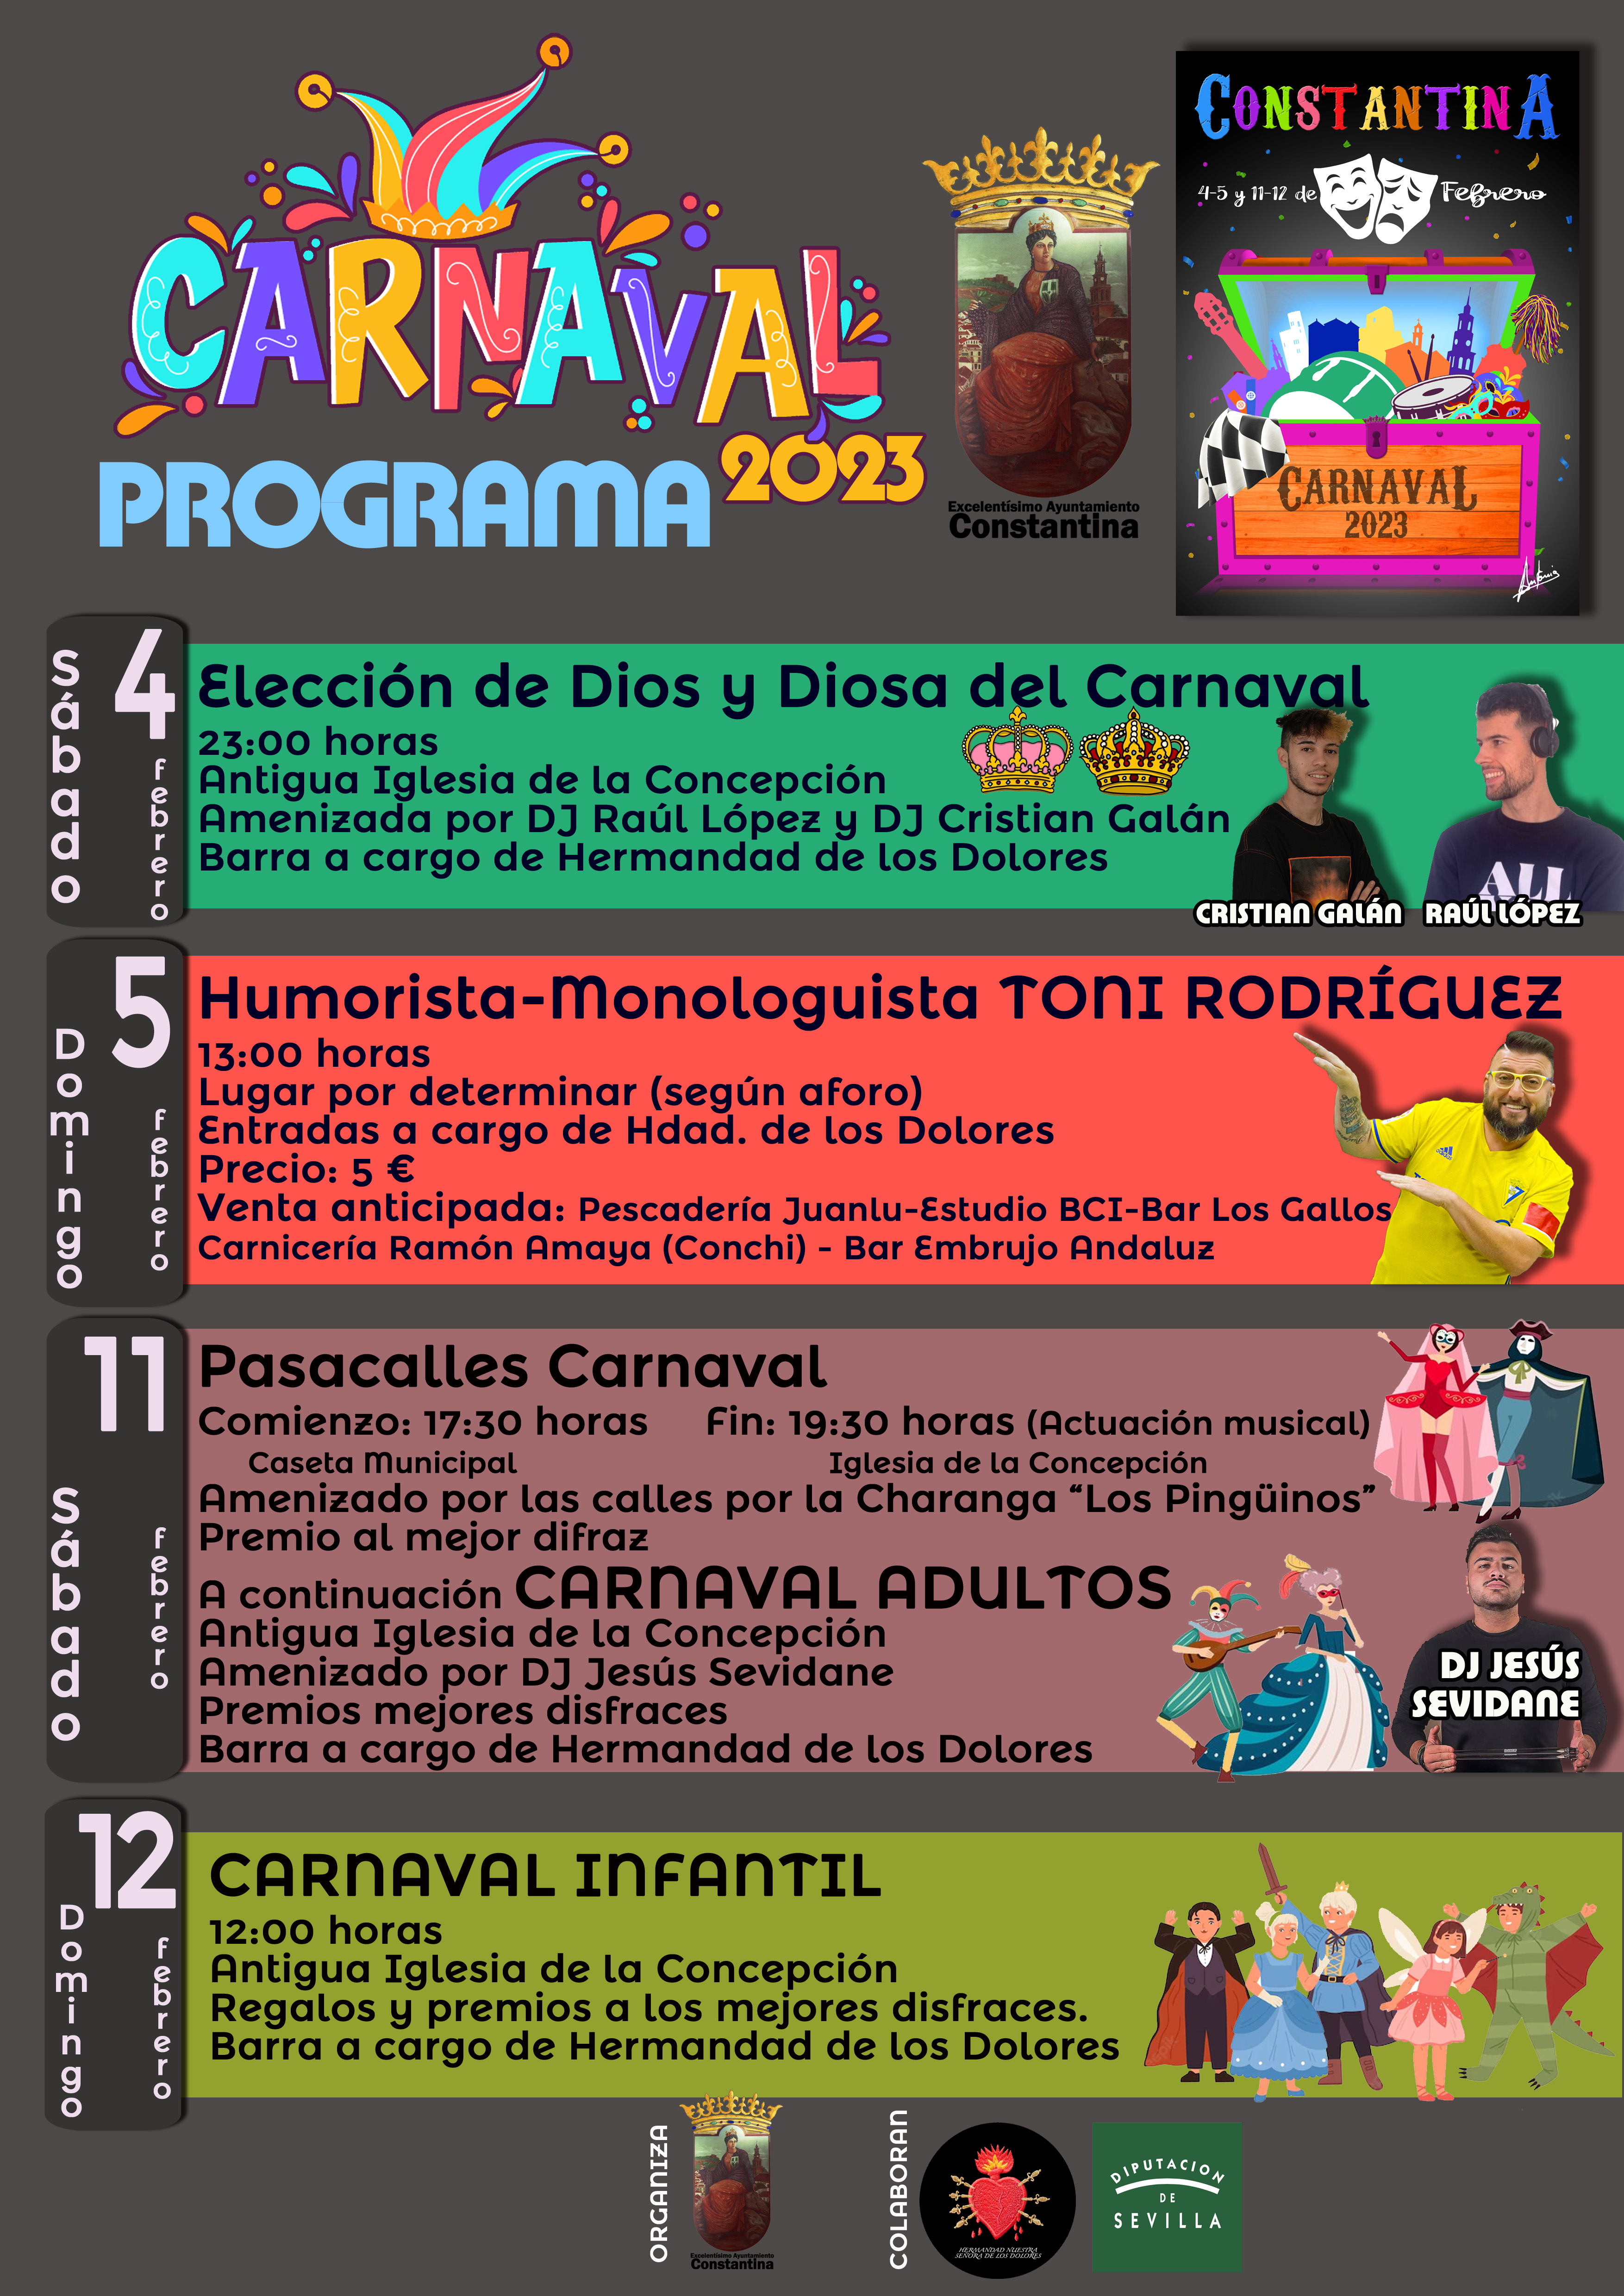 programa carnaval constantina 2023_para impresión